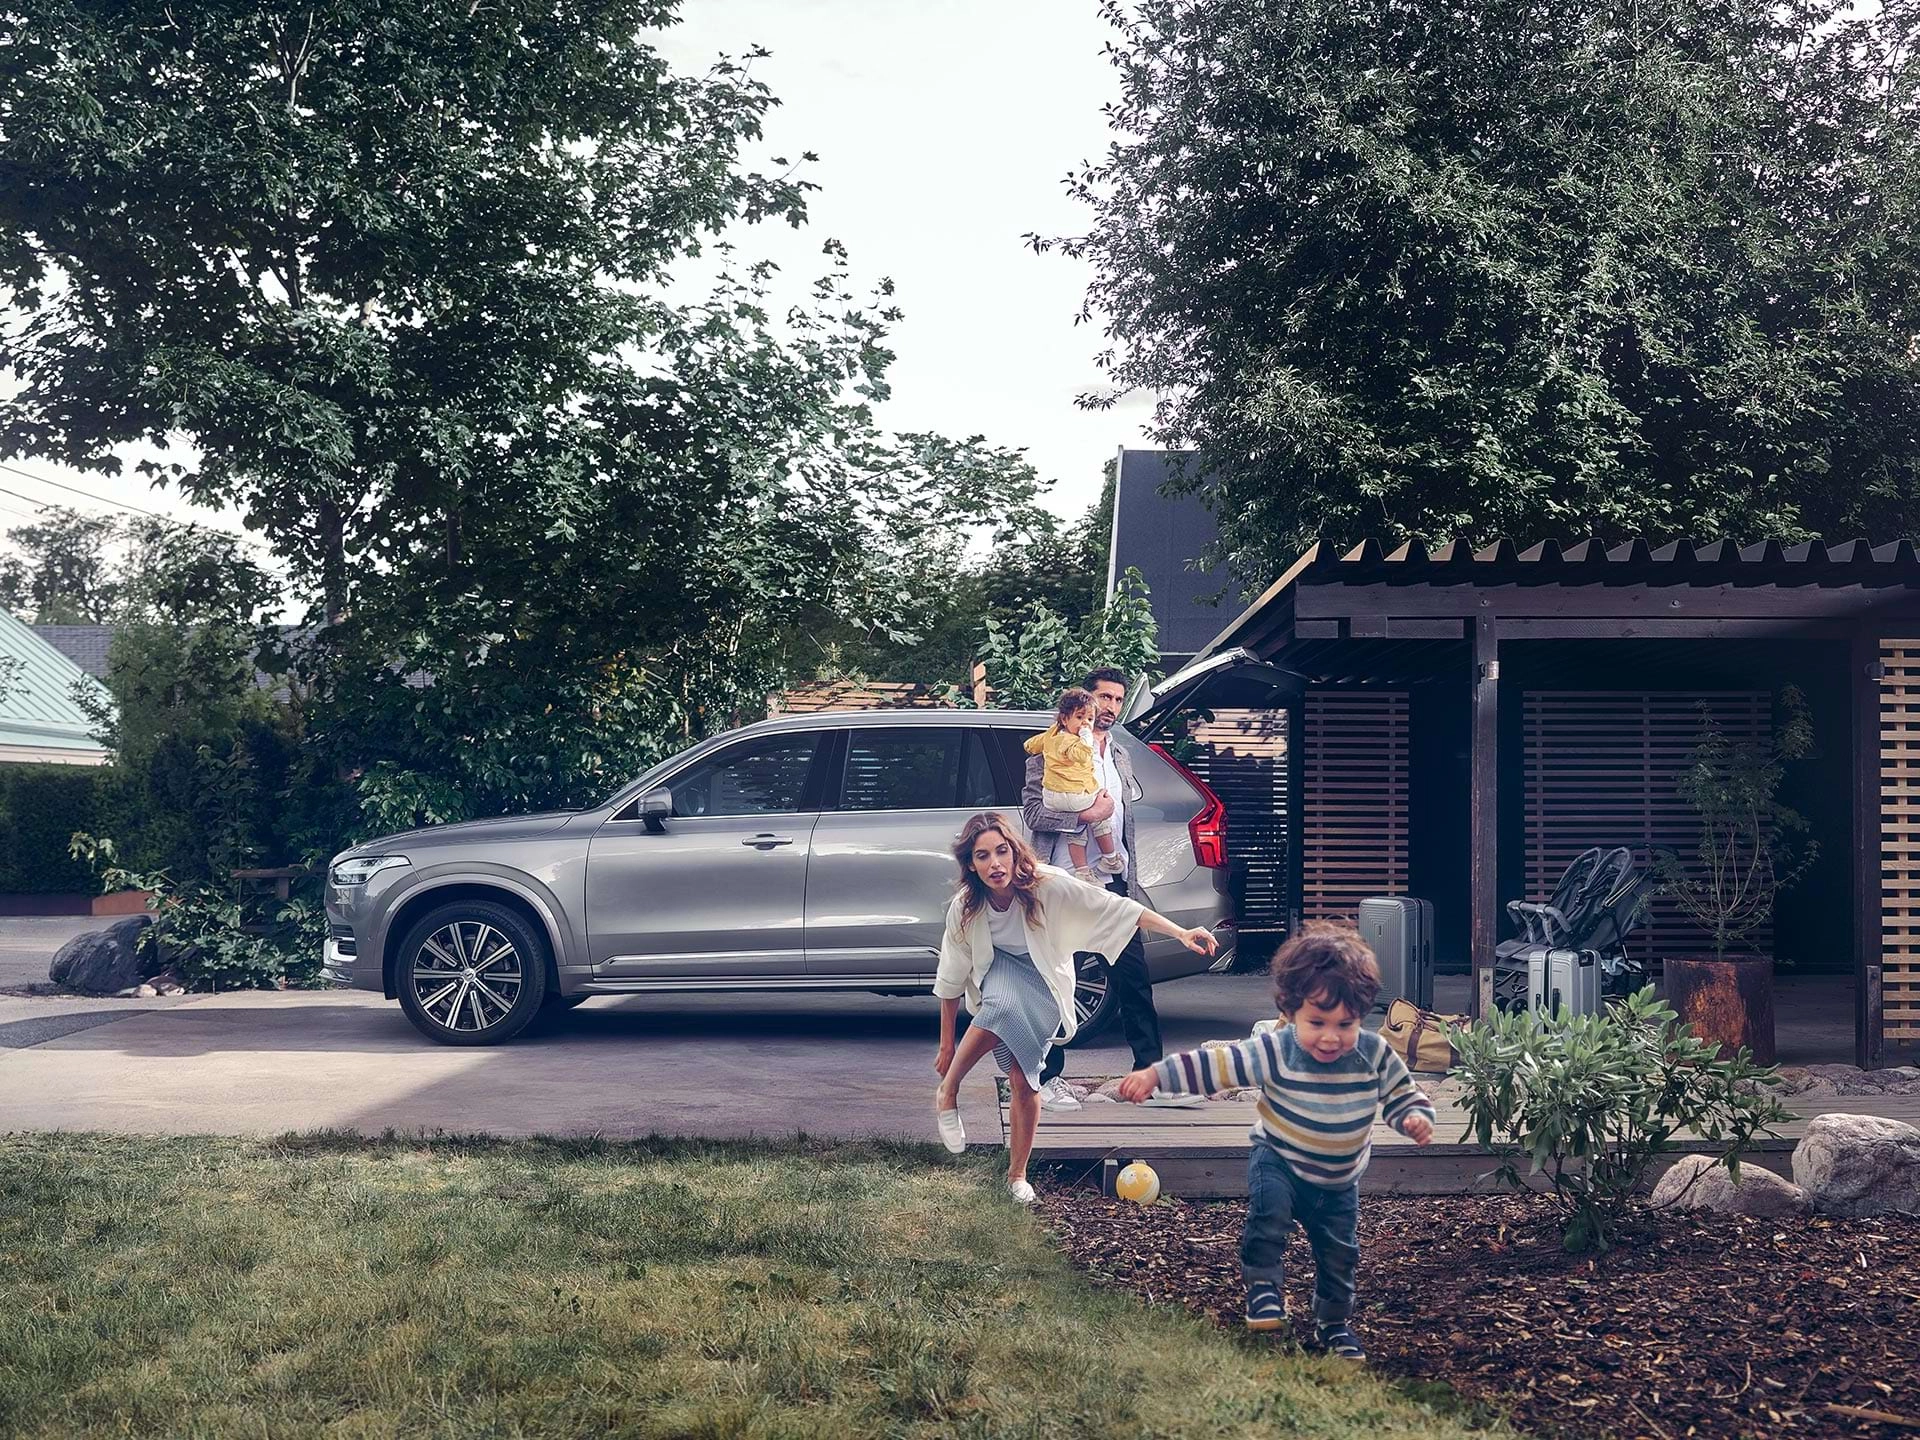 بينما تستعد عائلة من الضواحي لرحلة في سيارة فولفو الرياضية متعددة الاستخدامات، يركض طفل عبر الفناء وتلاحقه والدته.